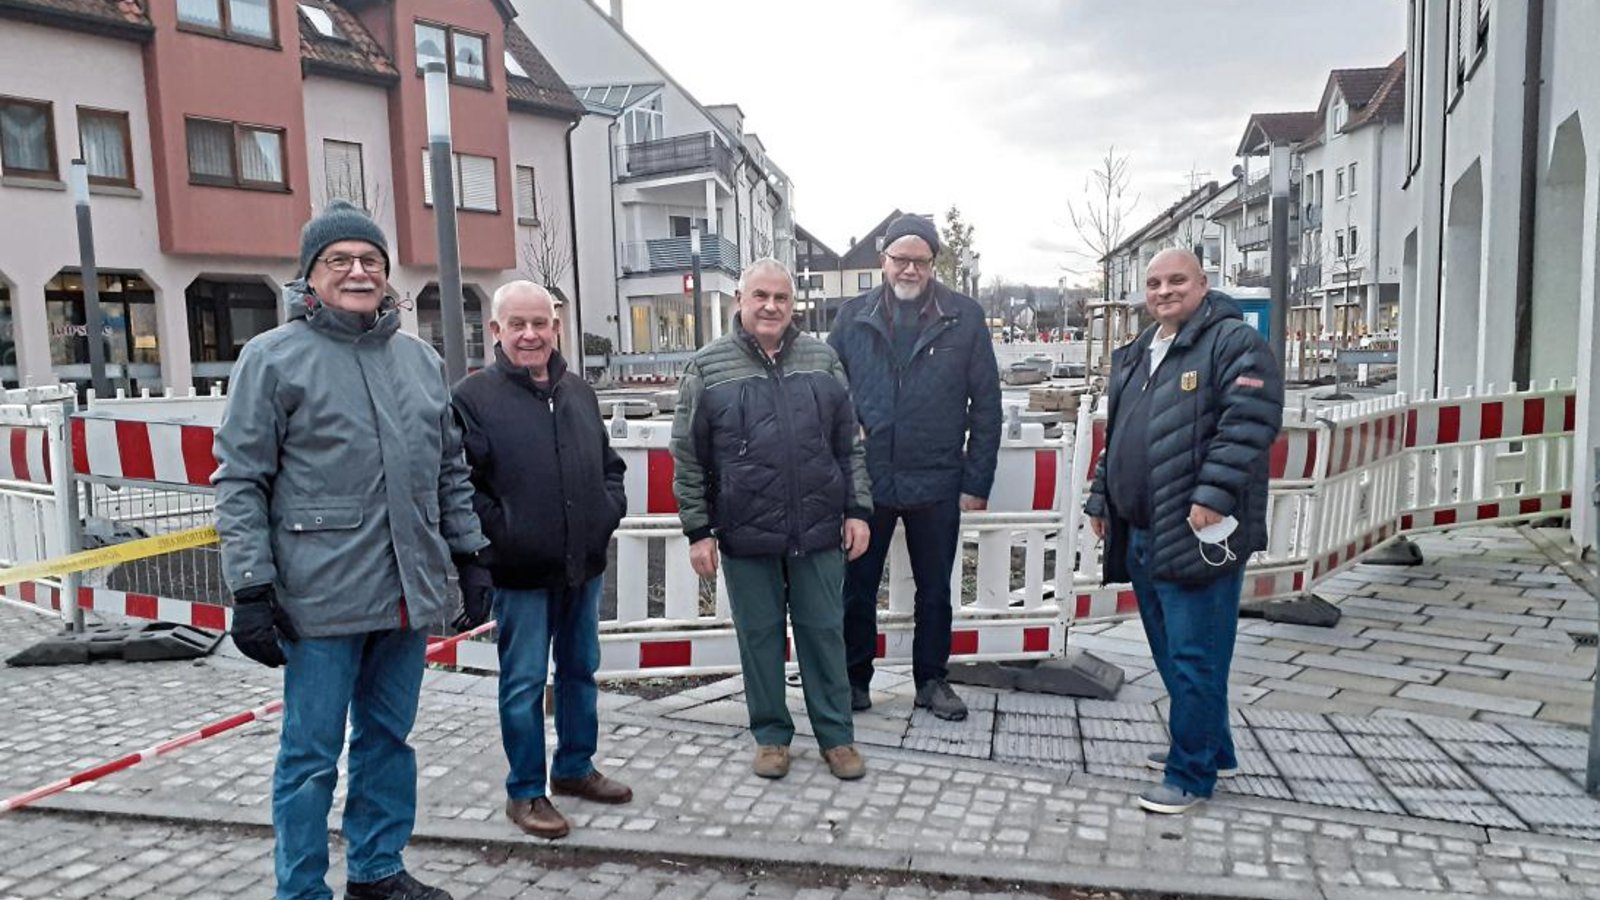 Bürgermeister Jürgen Scholz (rechts) unterhält sich mit Sersheimer Bürgern über die noch vor Weihnachten abgeschlossenen Baumaßnahmen am Markt.  Fotos: Glemser